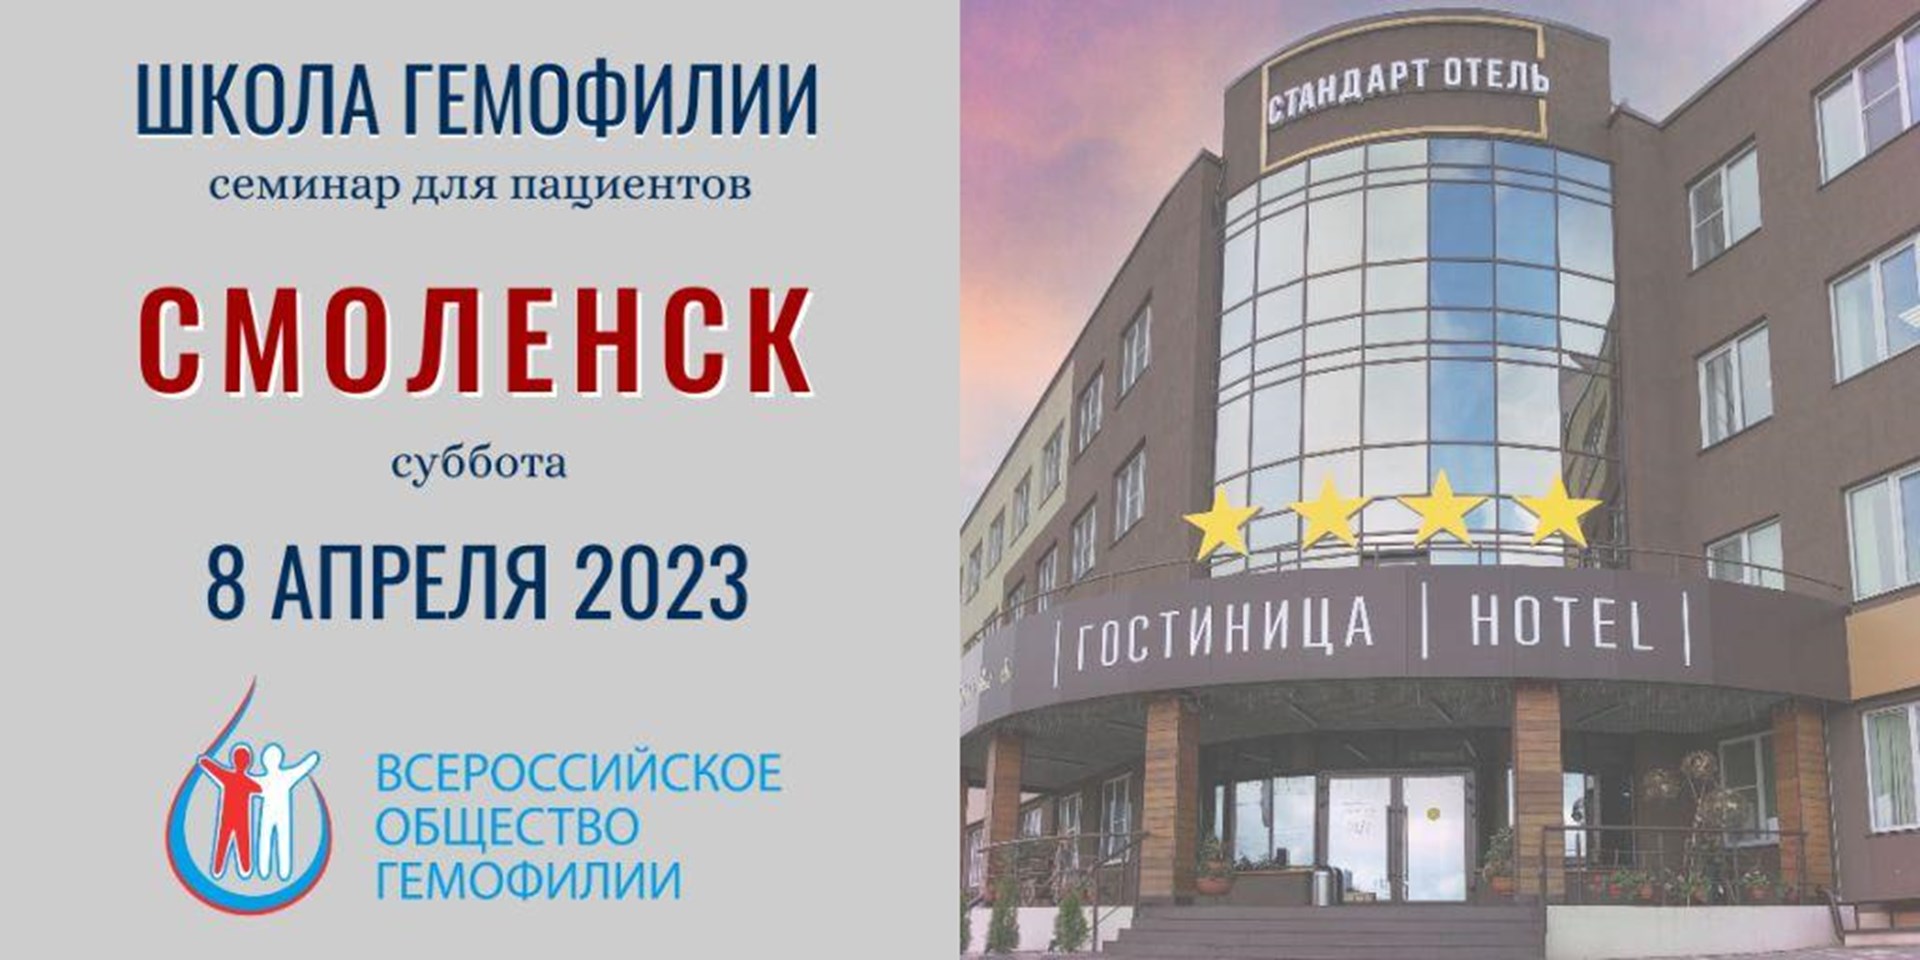 30.03.2023 8 апреля 2023 года в Смоленске пройдет Школа гемофилии